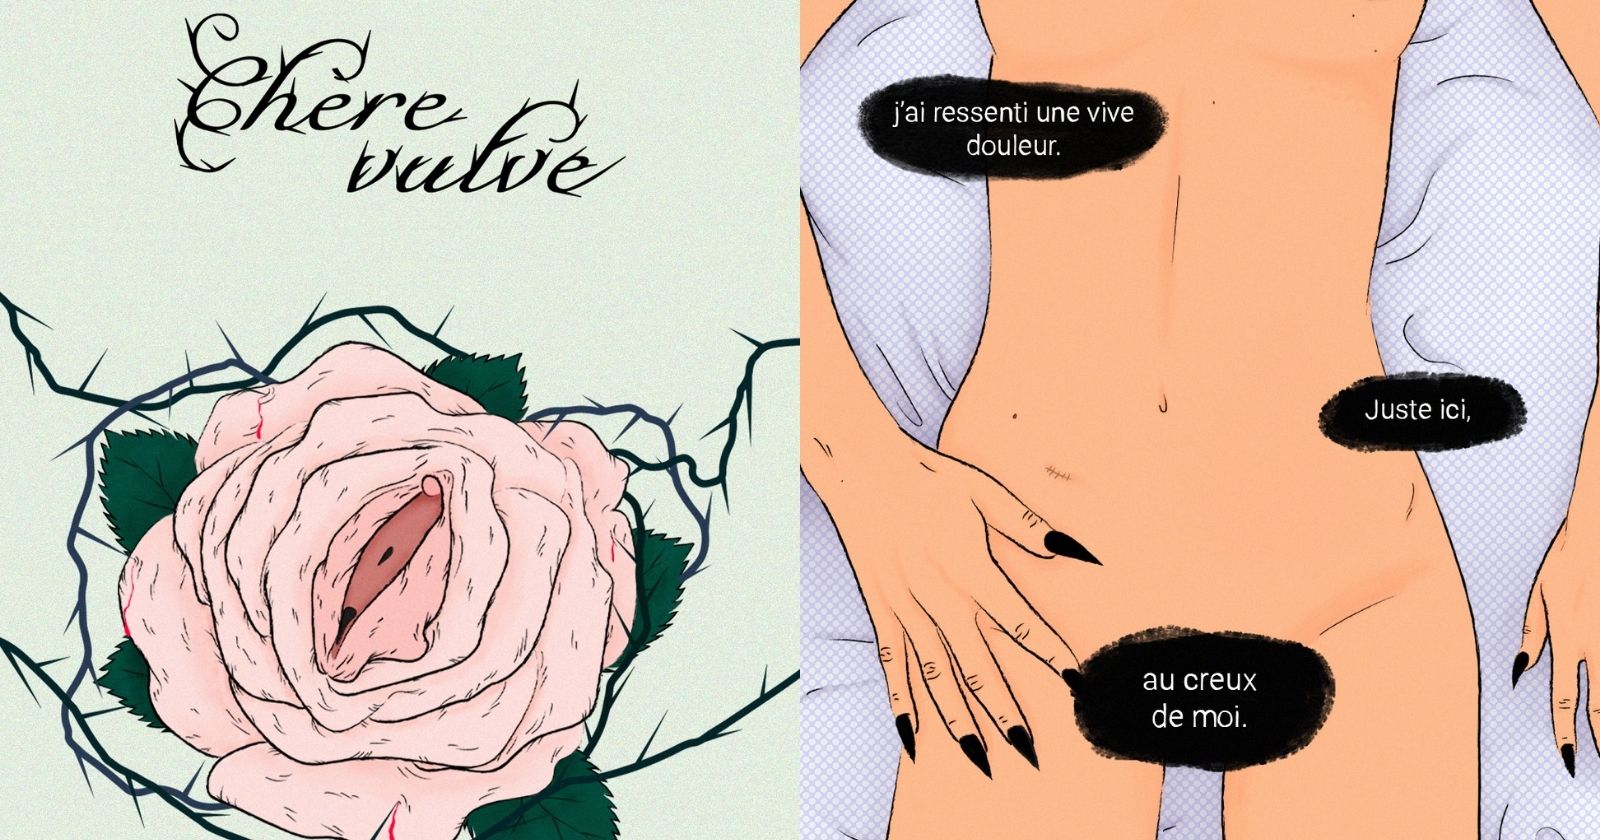 "Dear vulva": in drawings she relies on her fight against vestibulodynia